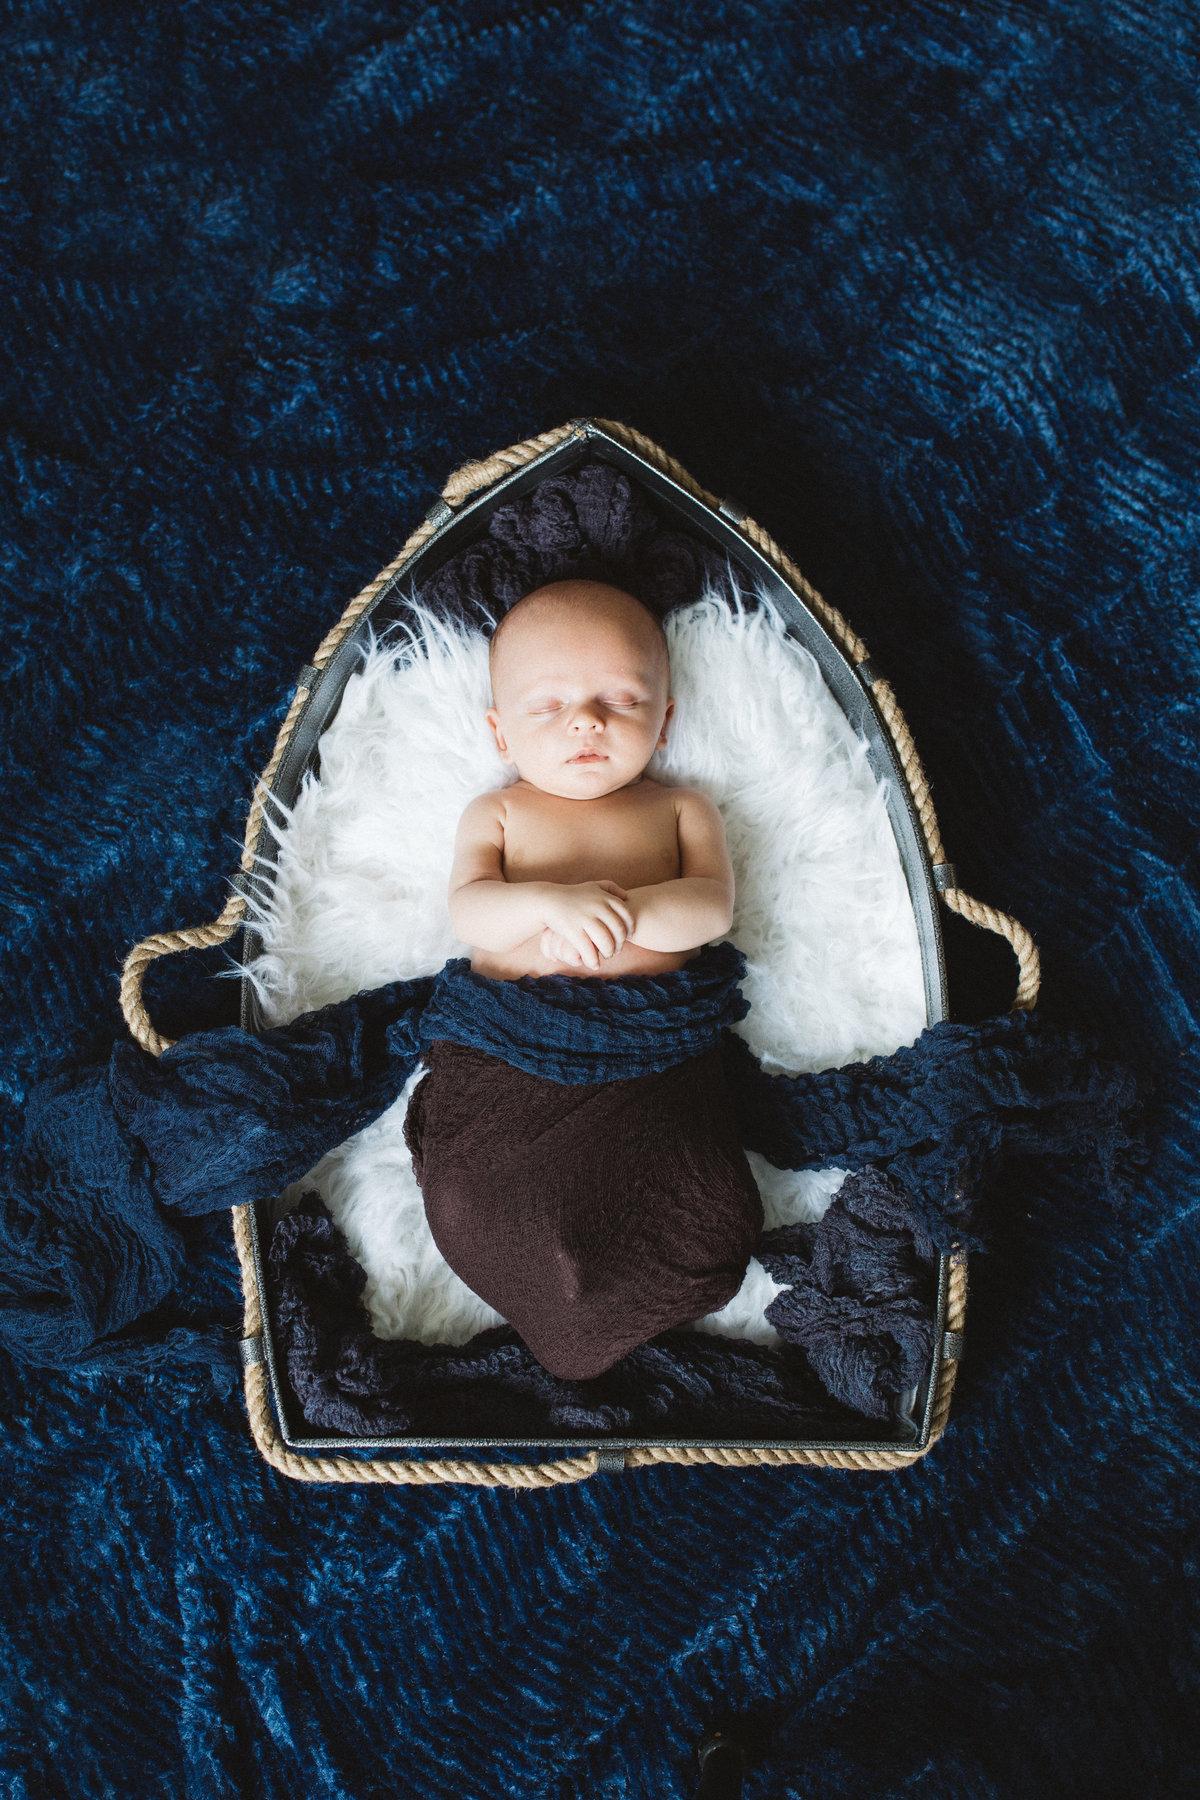 Oittsburgh Newborn photographer-5